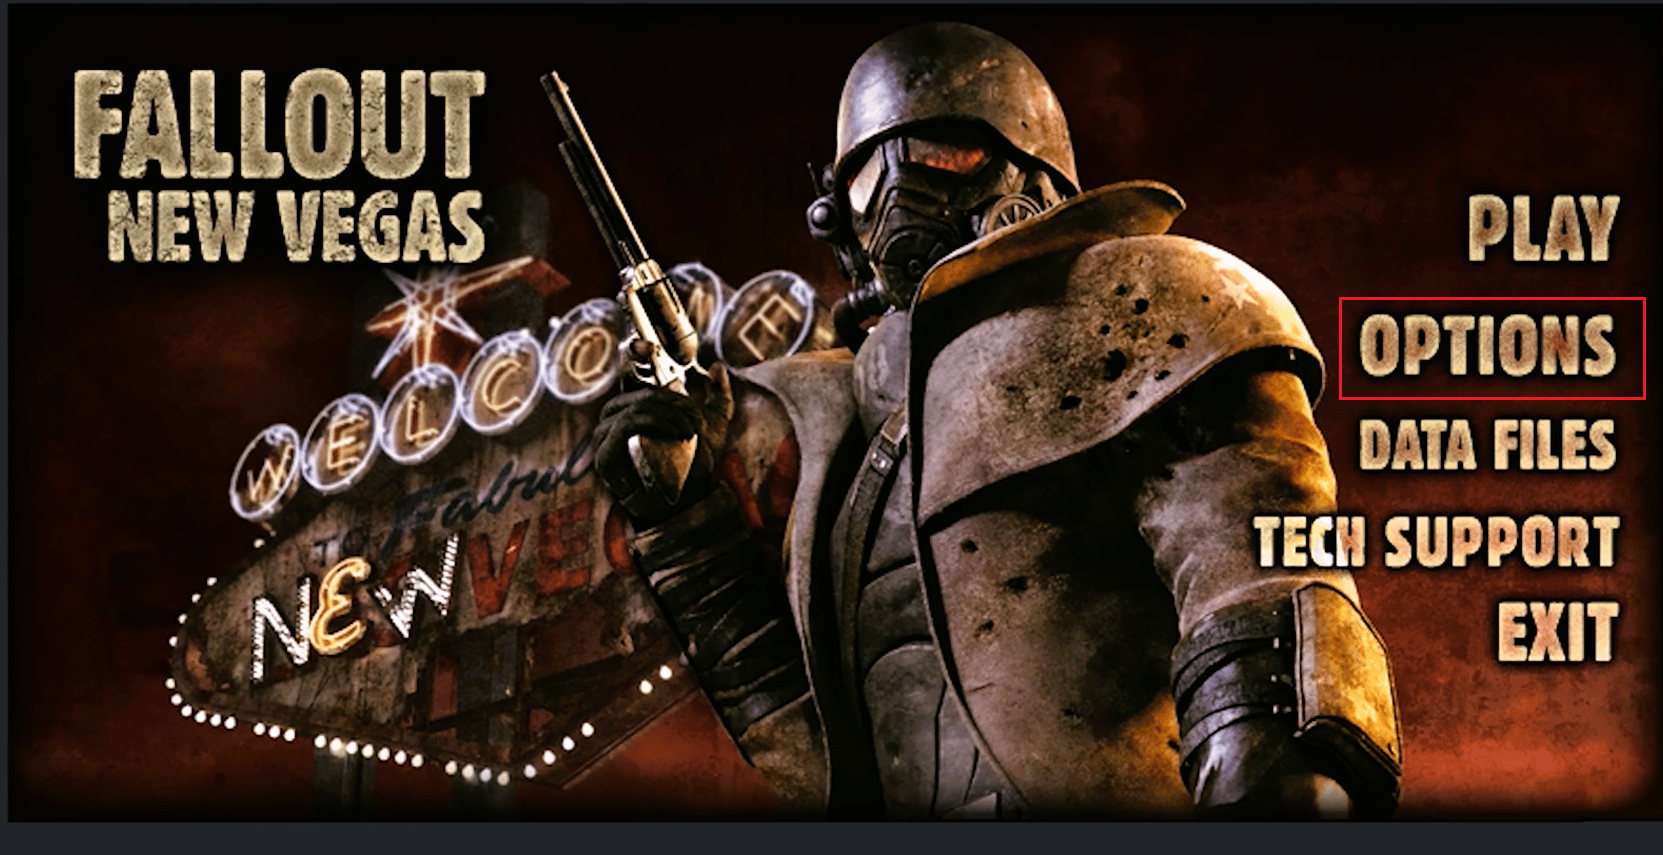 Fallout nouvelles options de Vegas